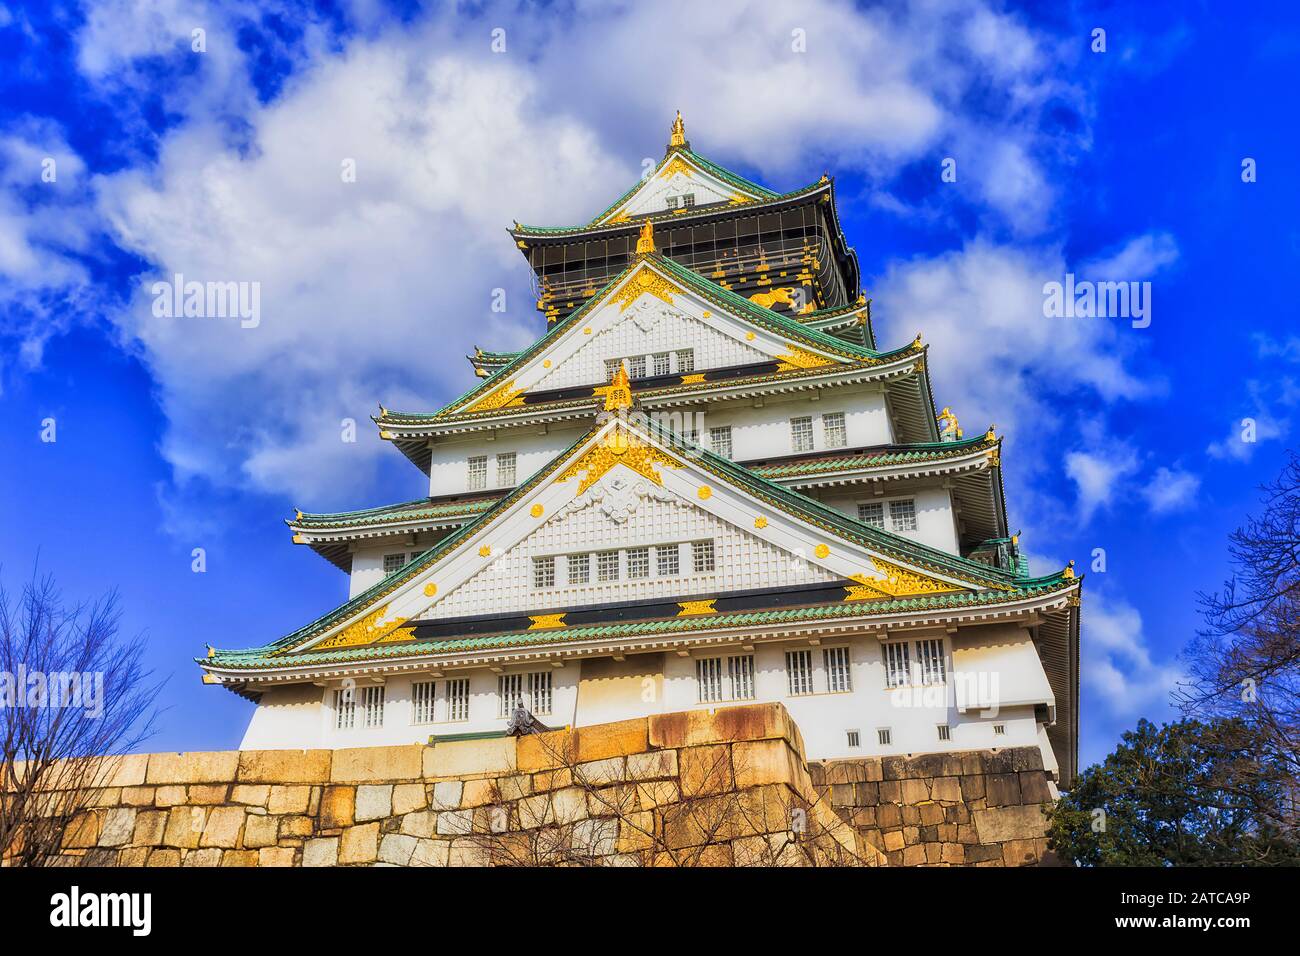 Le principal donjon du château historique de samouraï à Osaka avec une décoration ornementale dorée dans le style japonais contre le ciel bleu. Osaka, Japon. Banque D'Images